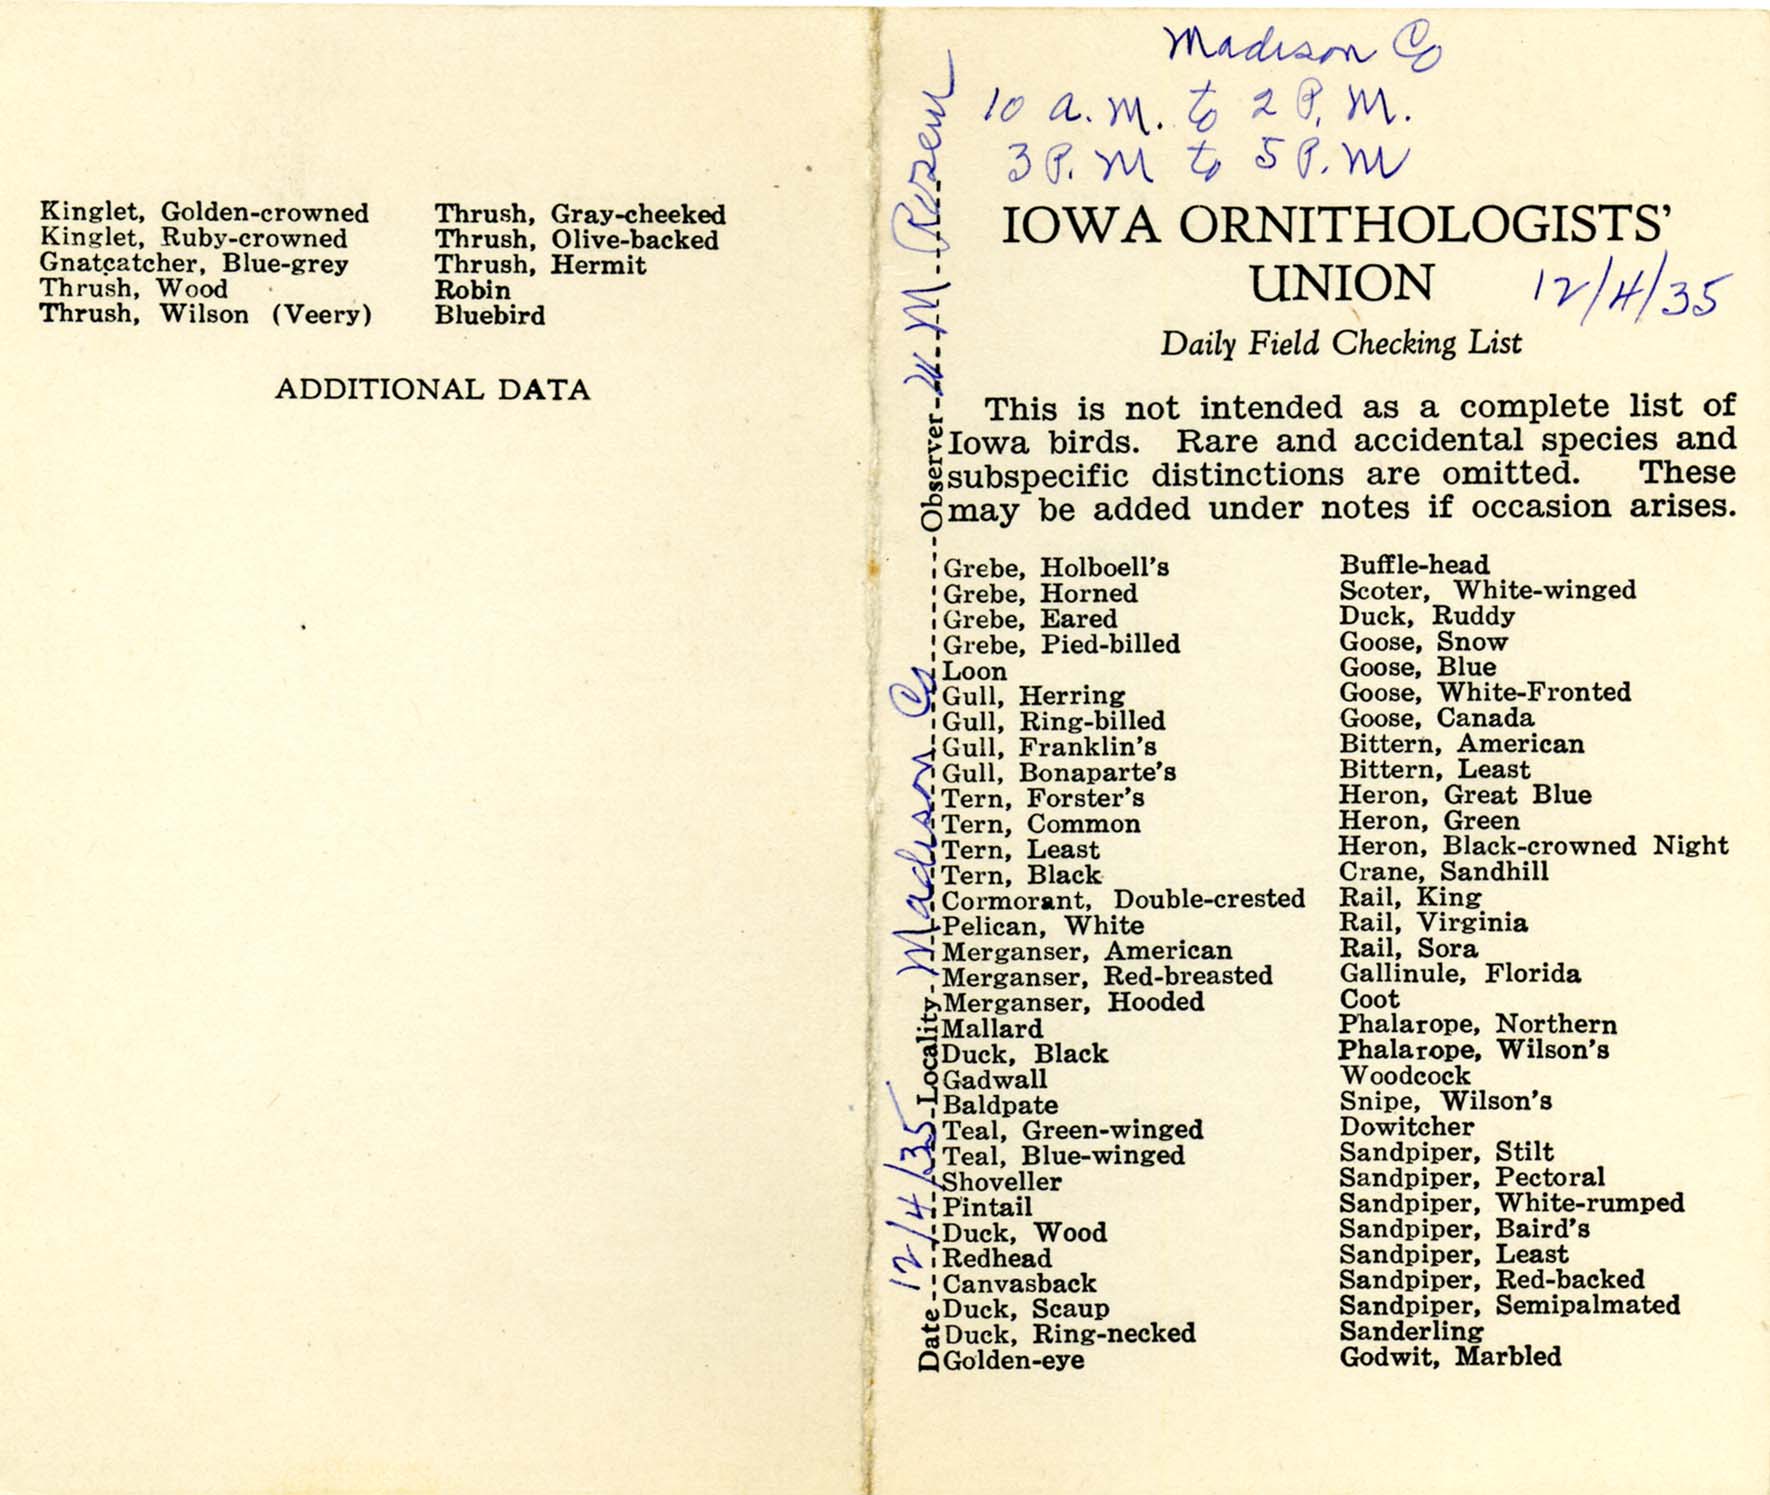 Daily field checking list, Walter Rosene, December 4, 1935